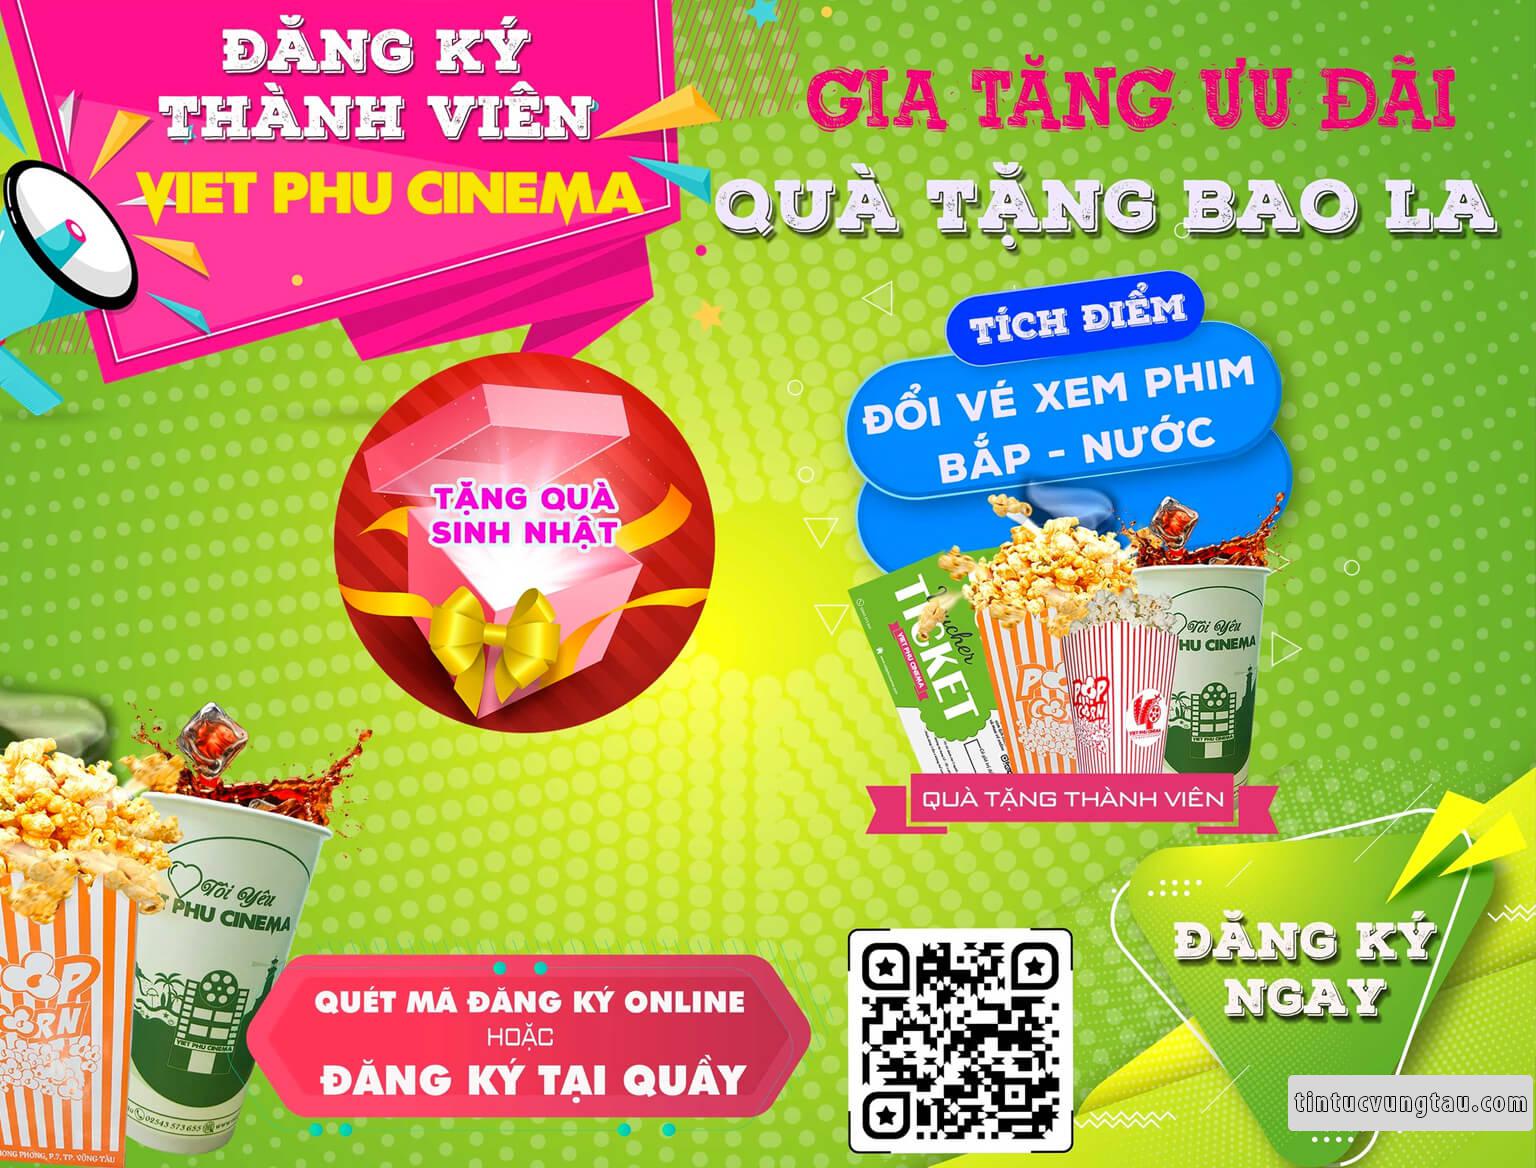 Lịch Chiếu Phim tại Việt Phú Cinema Vũng Tàu